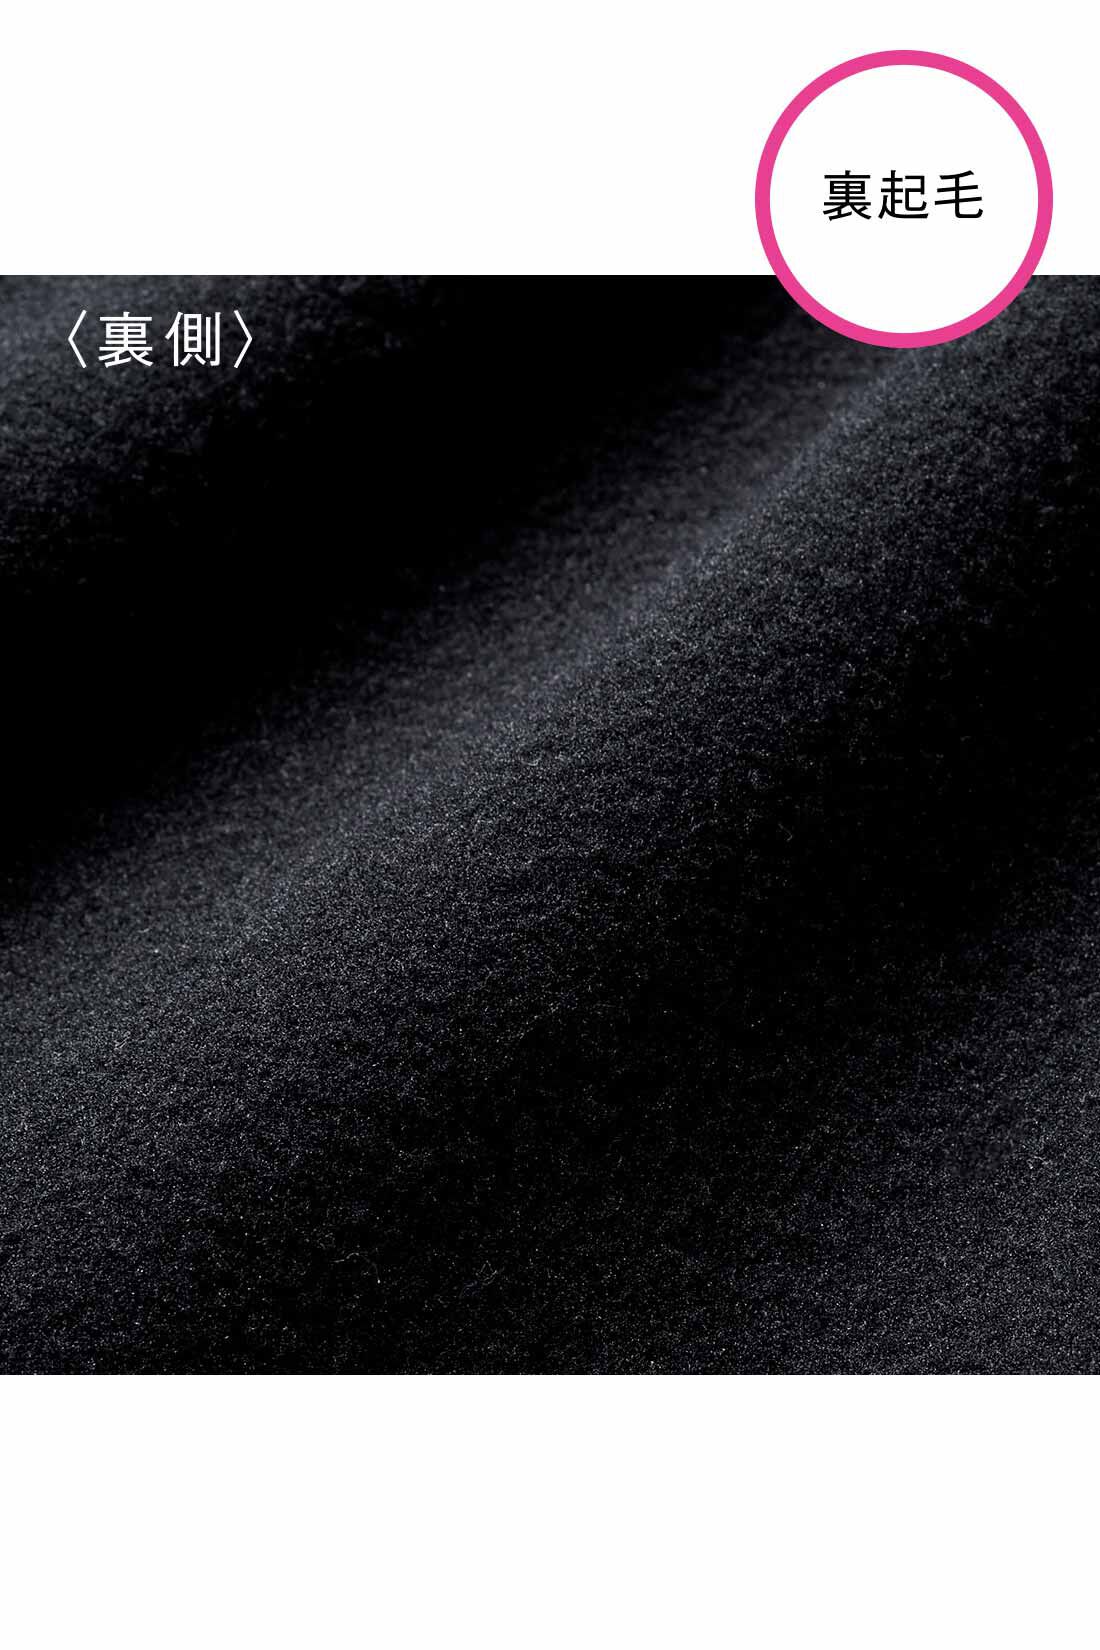 DRECO by IEDIT|【3～10日でお届け】IEDIT[イディット]　裏起毛ダンボールカットソーの　前後ろ着られるノースリーブワンピース〈ブラック〉|伸びやかなダンボールカットソー素材。裏起毛で暖か。